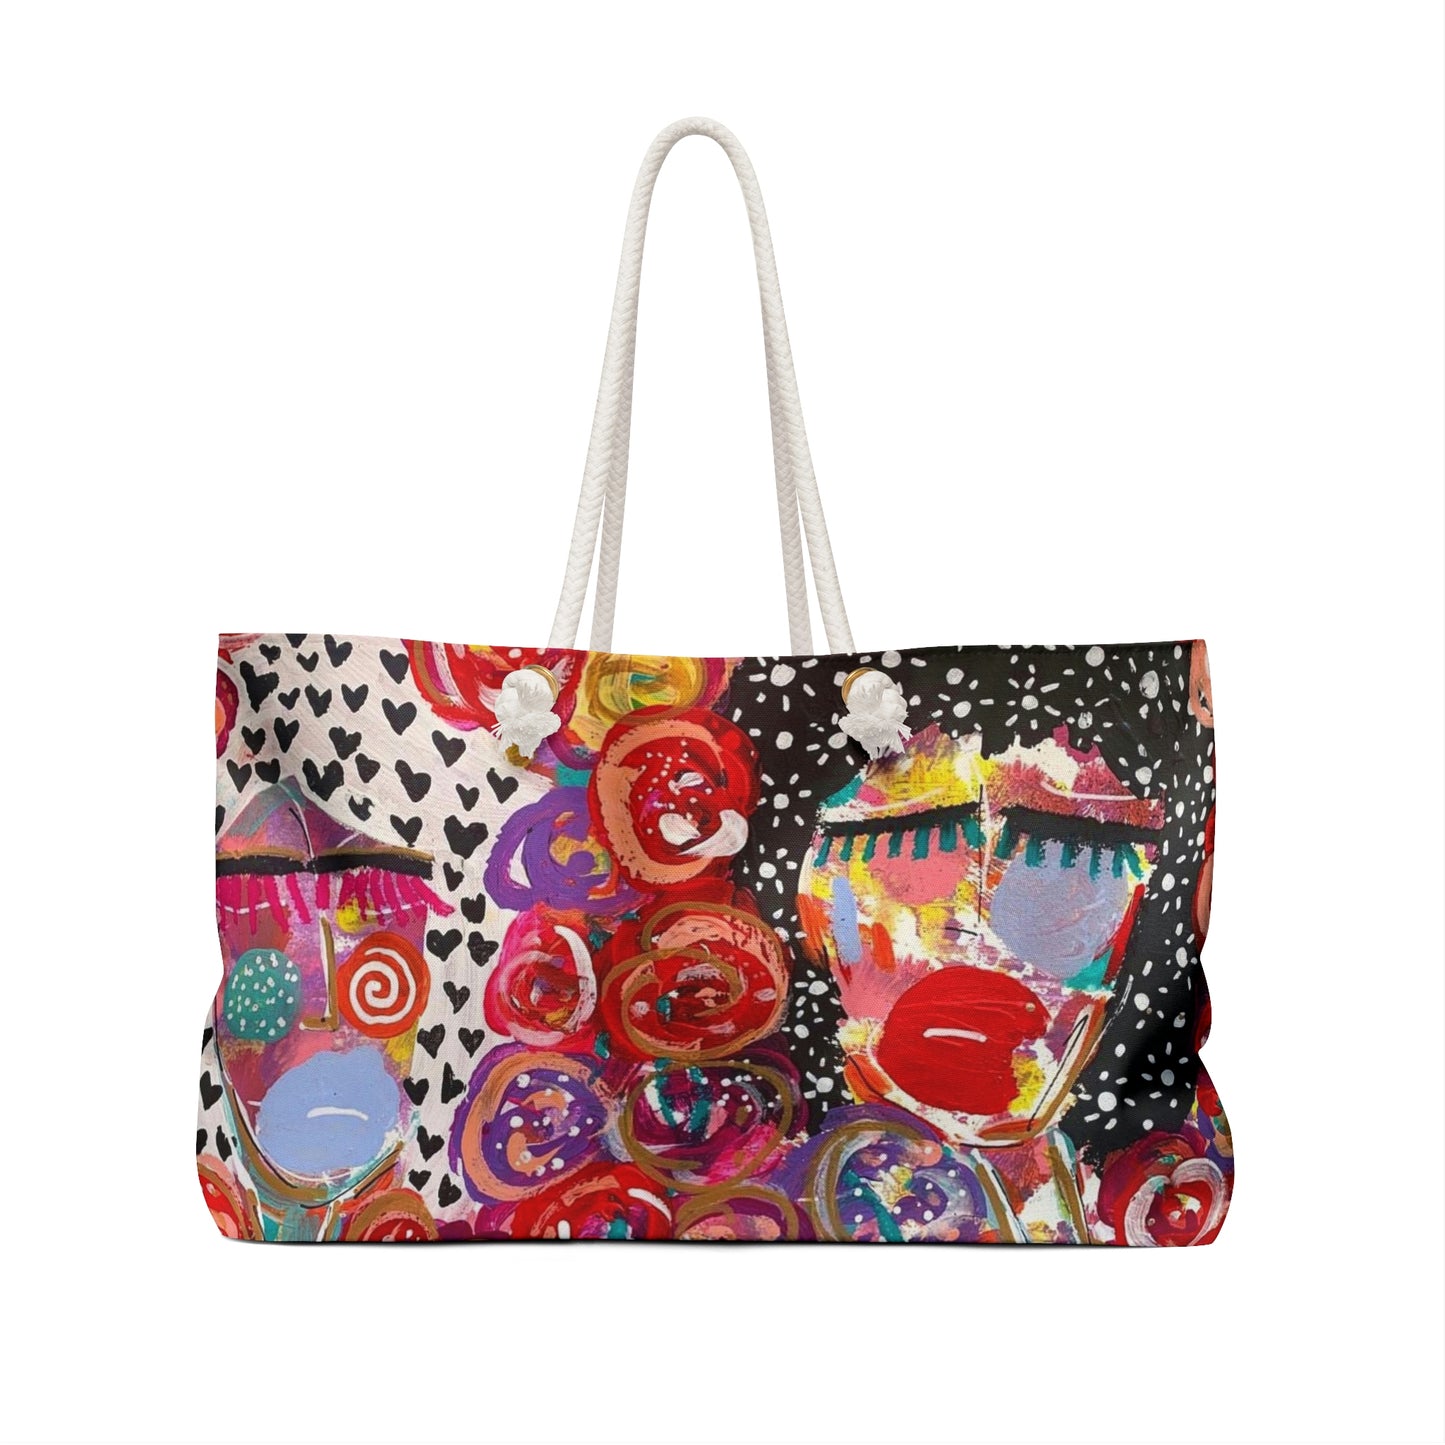 Friends + Flowers Girl Talk Art Weekender Bag